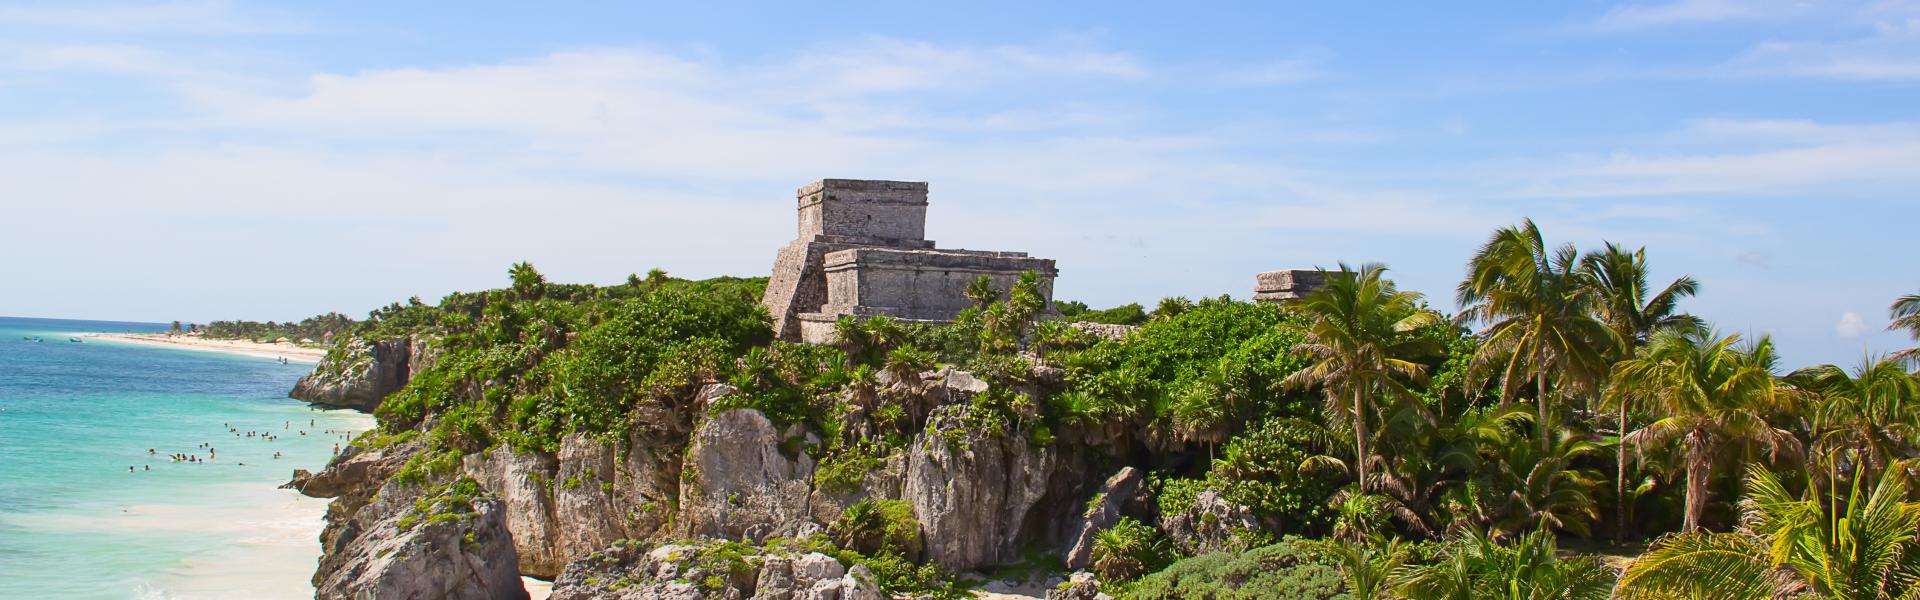 Alquileres y casas de vacaciones Yucatán - Wimdu